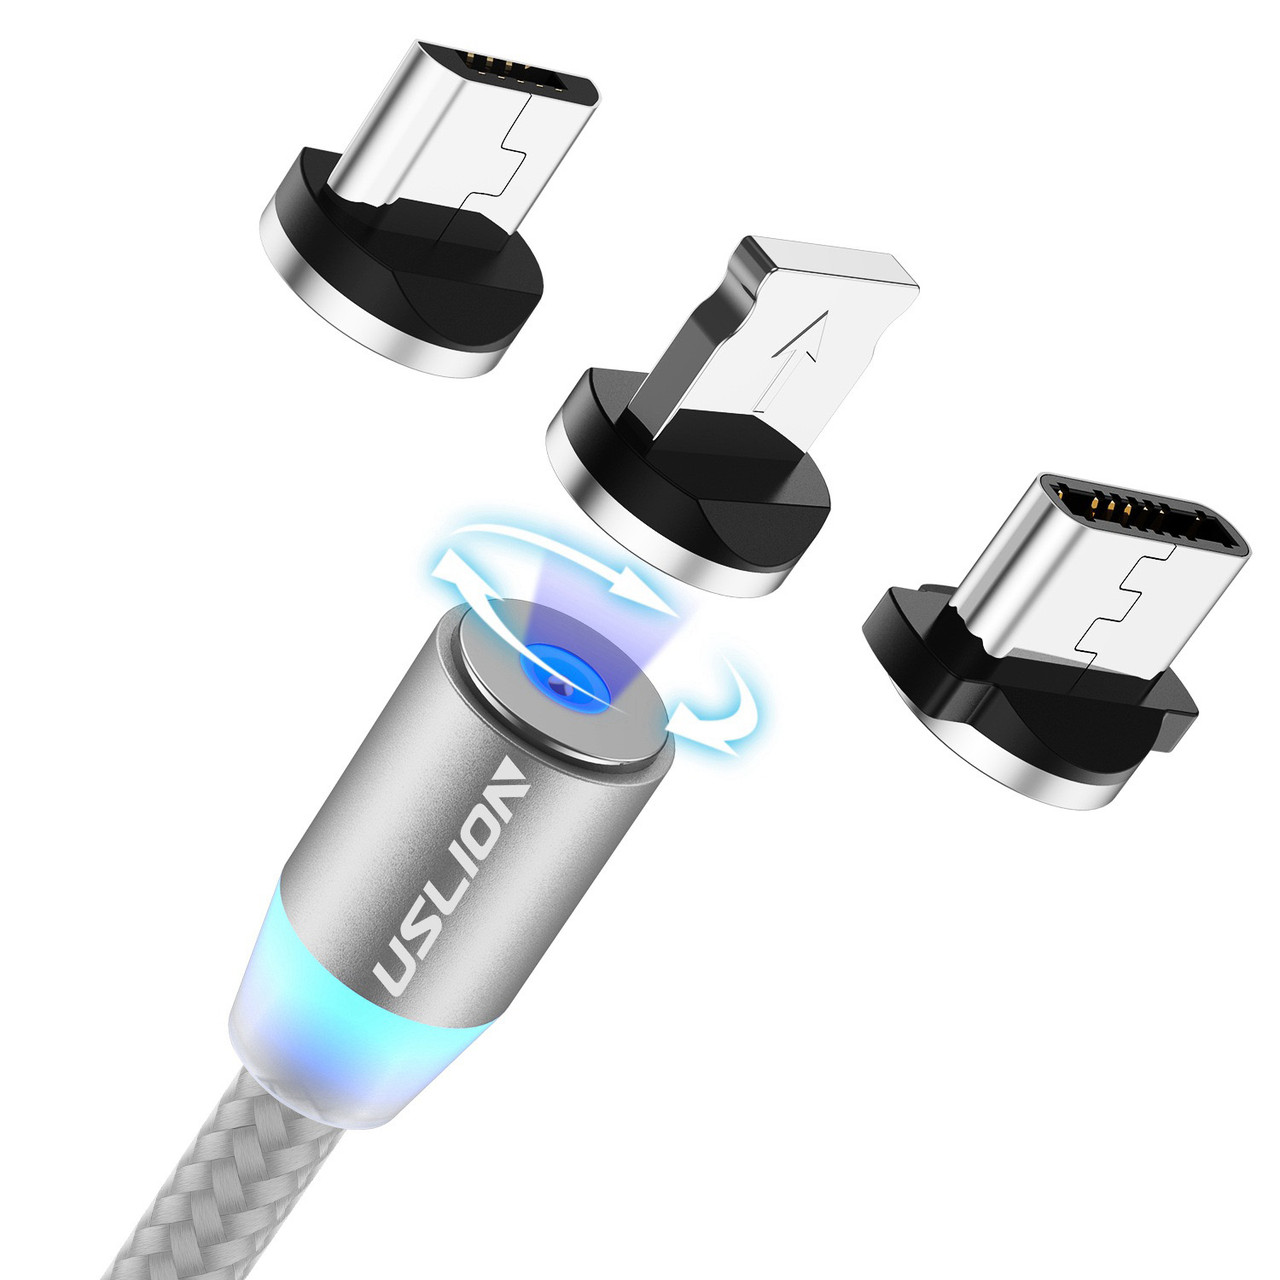 Кабель зарядный магнитный USLION Micro USB / Lightning Apple iPhone / USB Type-C, серебро 1 метр, фото 1